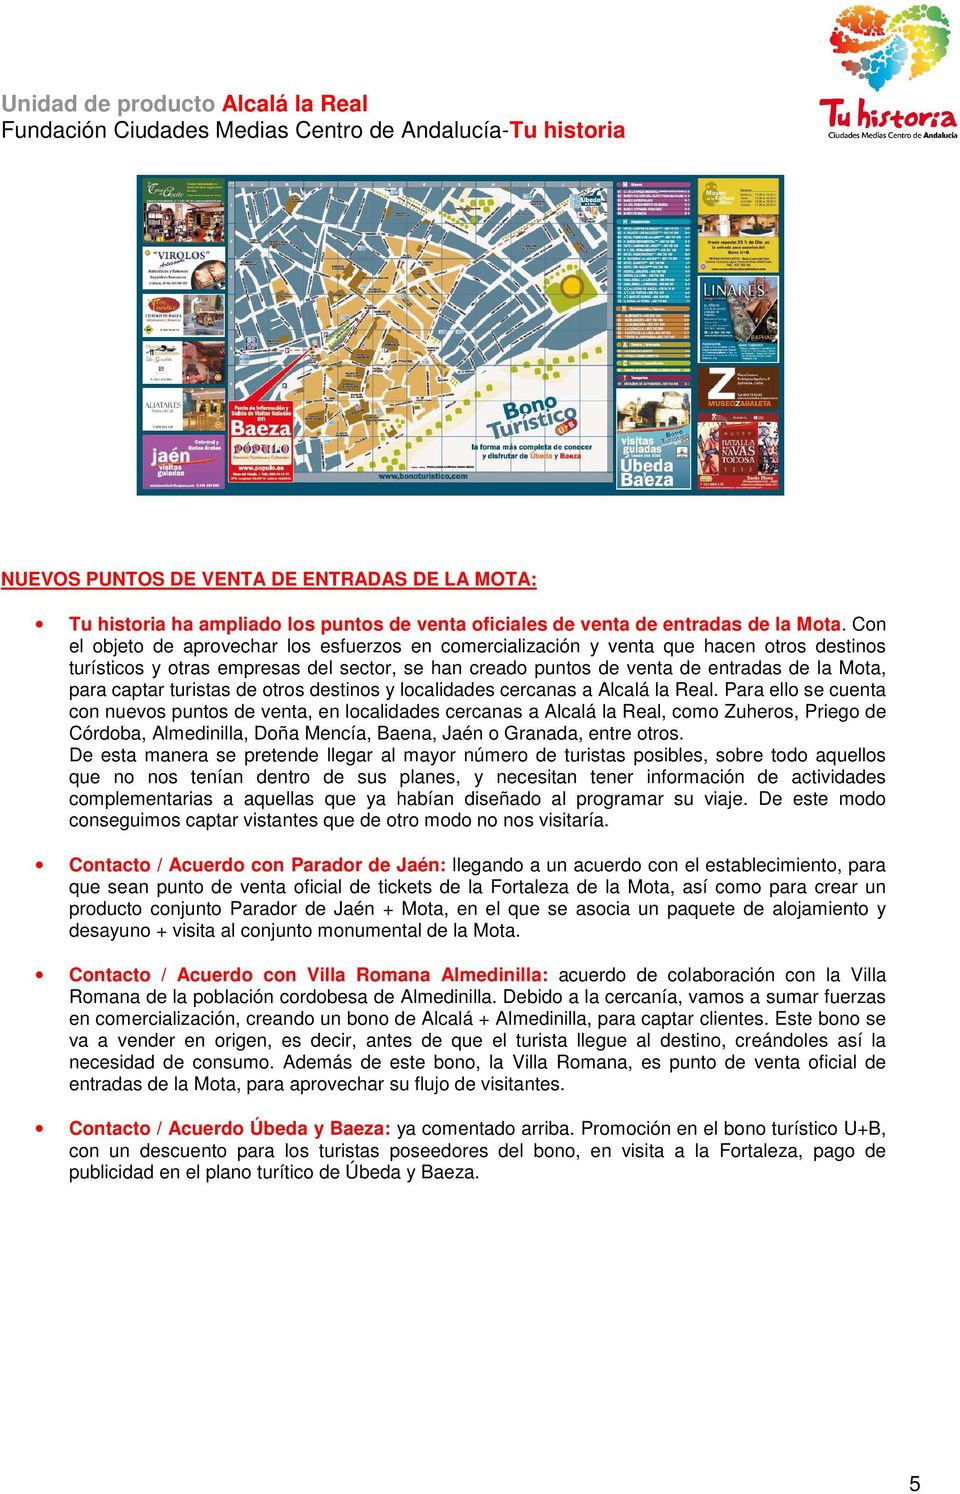 captar turistas de otros destinos y localidades cercanas a Alcalá la Real.